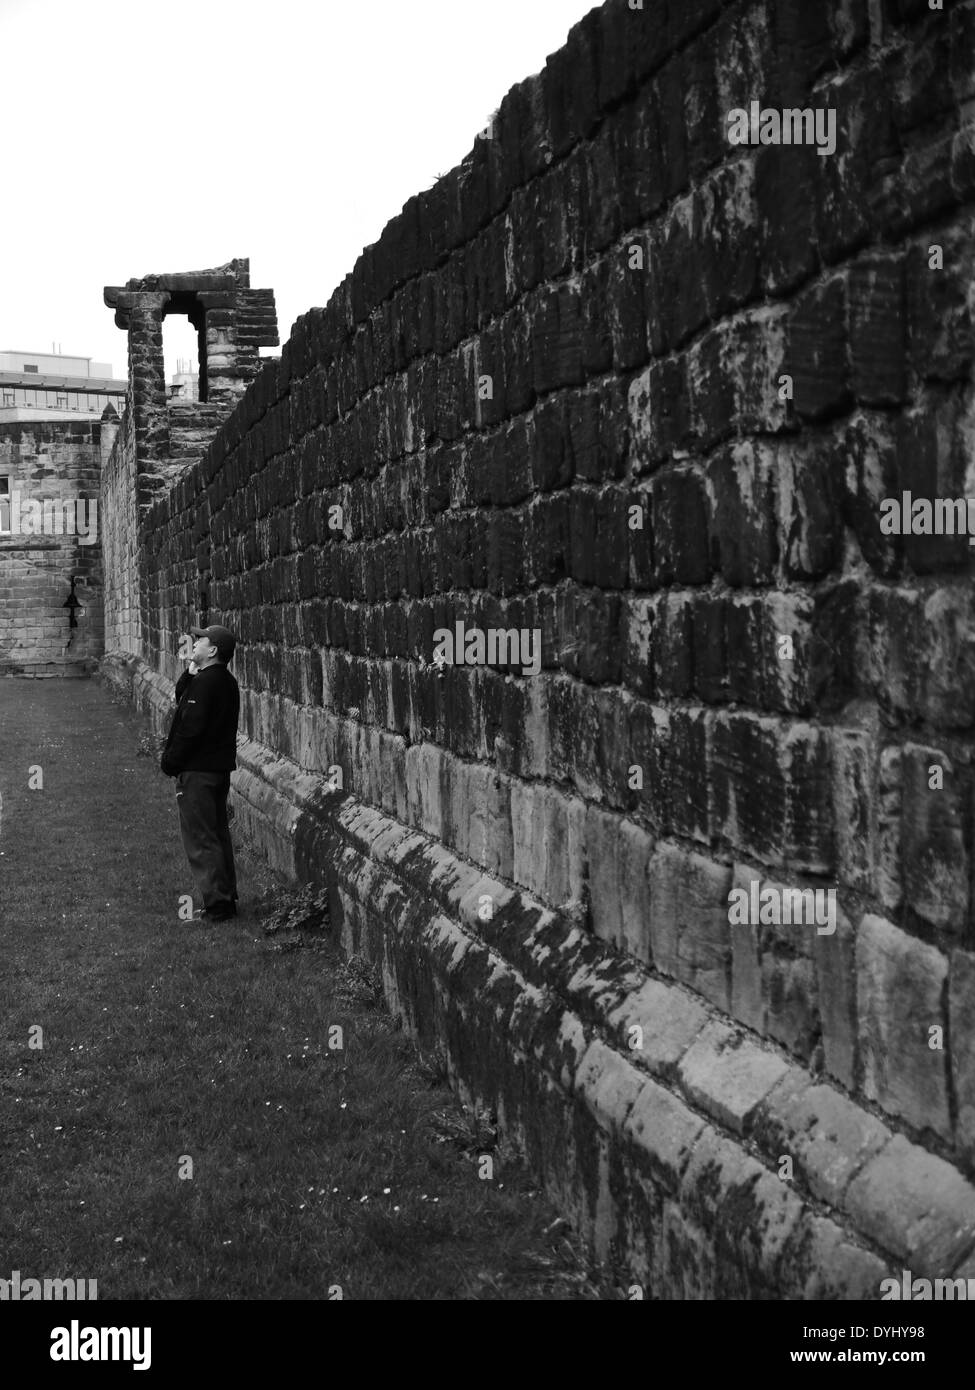 Uomo che utilizza il telefono cellulare accanto alla vista parziale della città medievale a parete, Newcastle upon Tyne, England, Regno Unito Foto Stock